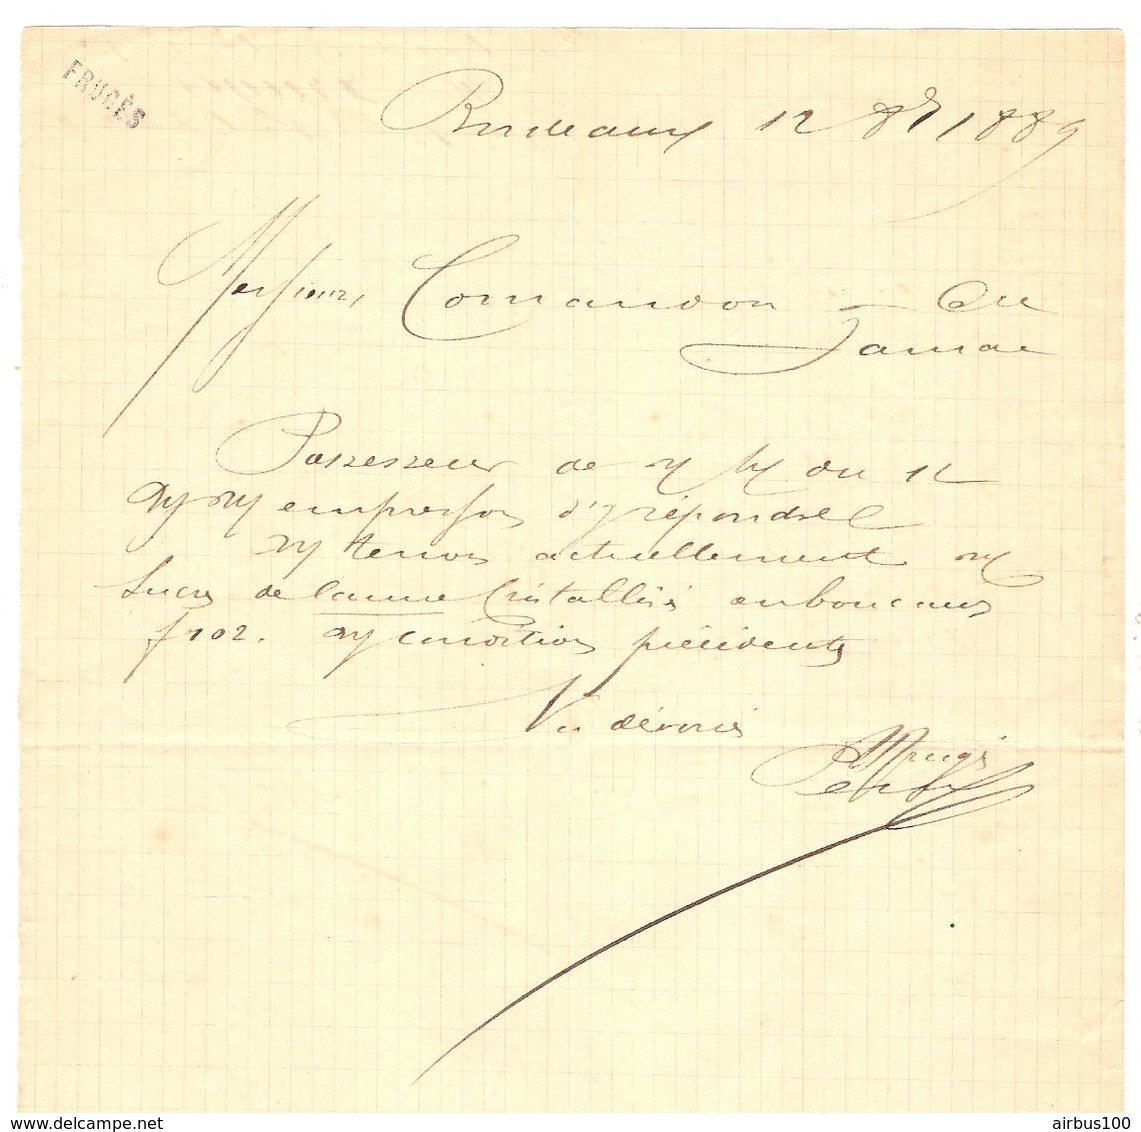 LETTRE MANUSCRIT BORDEAUX 12 OCTOBRE 1889 - SIGNATURE HENRY FRUGES - HOTEL FRUGES - SUCRE De CANNE - JARNAC - Manuscritos